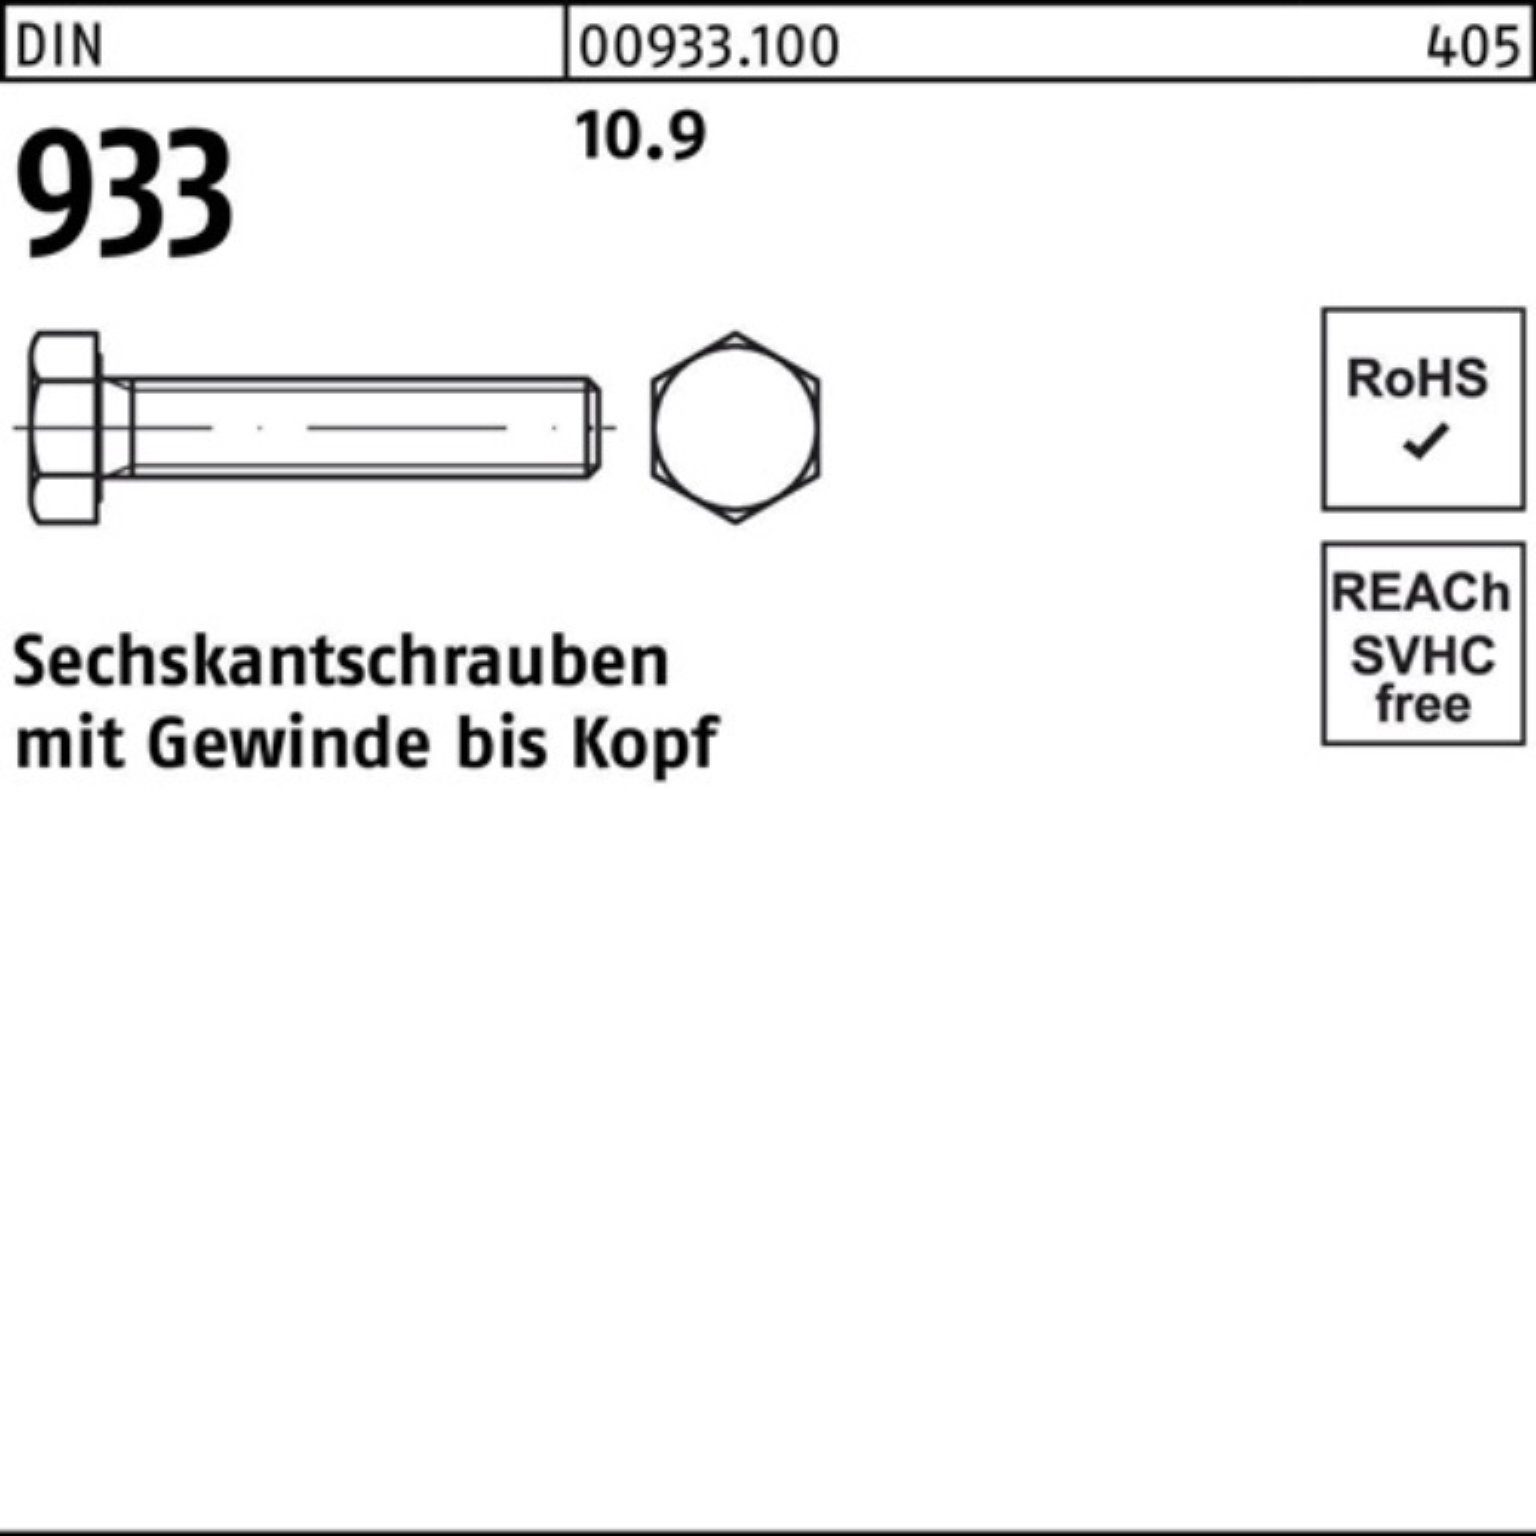 Reyher Sechskantschraube 100er Pack 933 Stück 10 DIN M27x Sechskantschraube 933 10.9 DIN VG 70